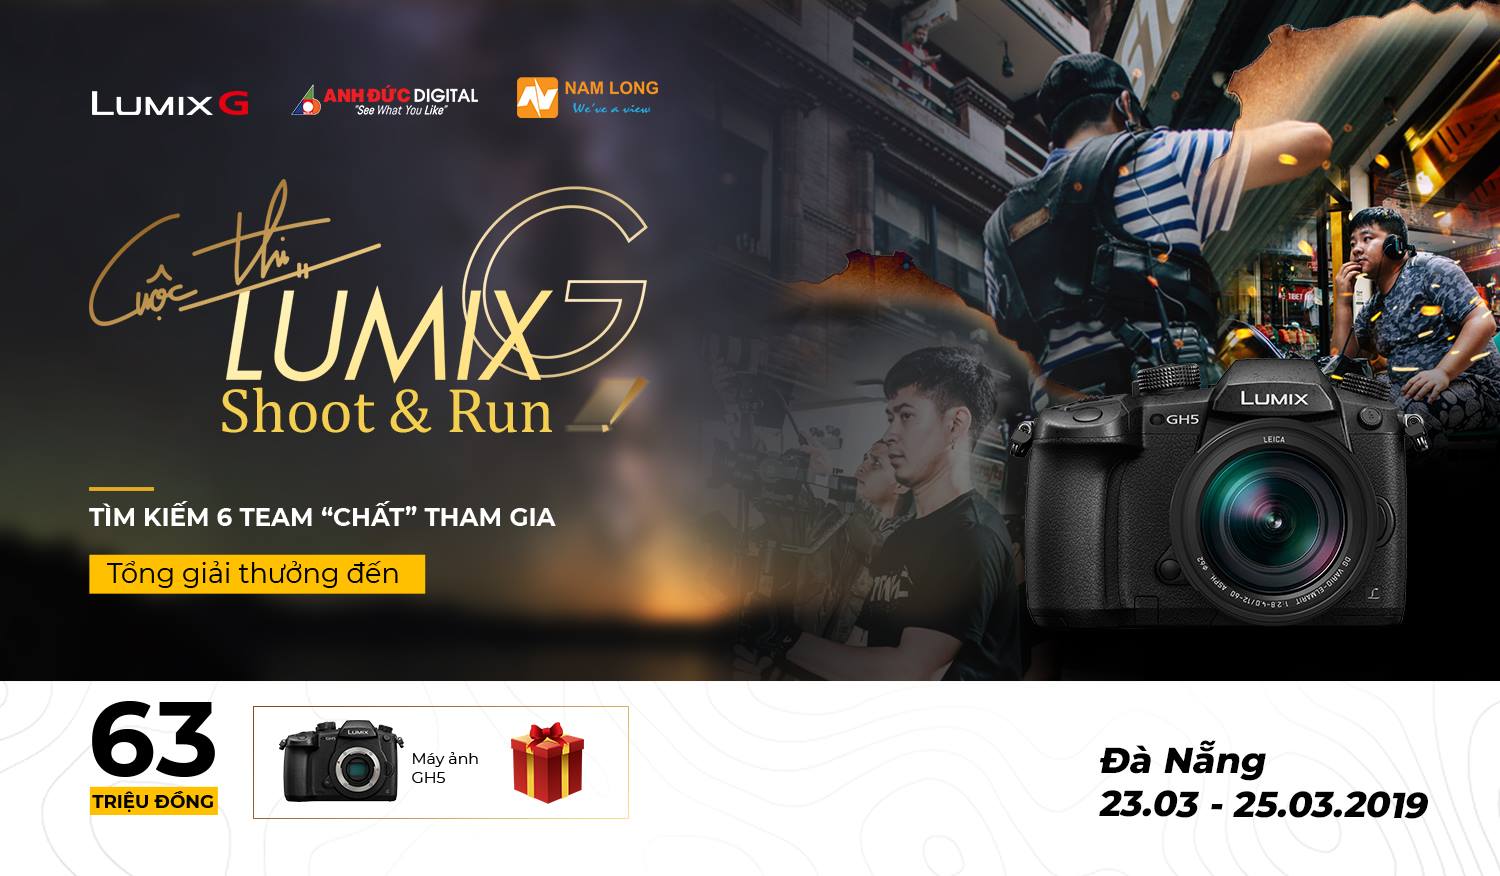 Lumix - Shoot & Run - cuộc đua khốc liệt cho các đội làm phim chuyên nghiệp | 50mm Vietnam